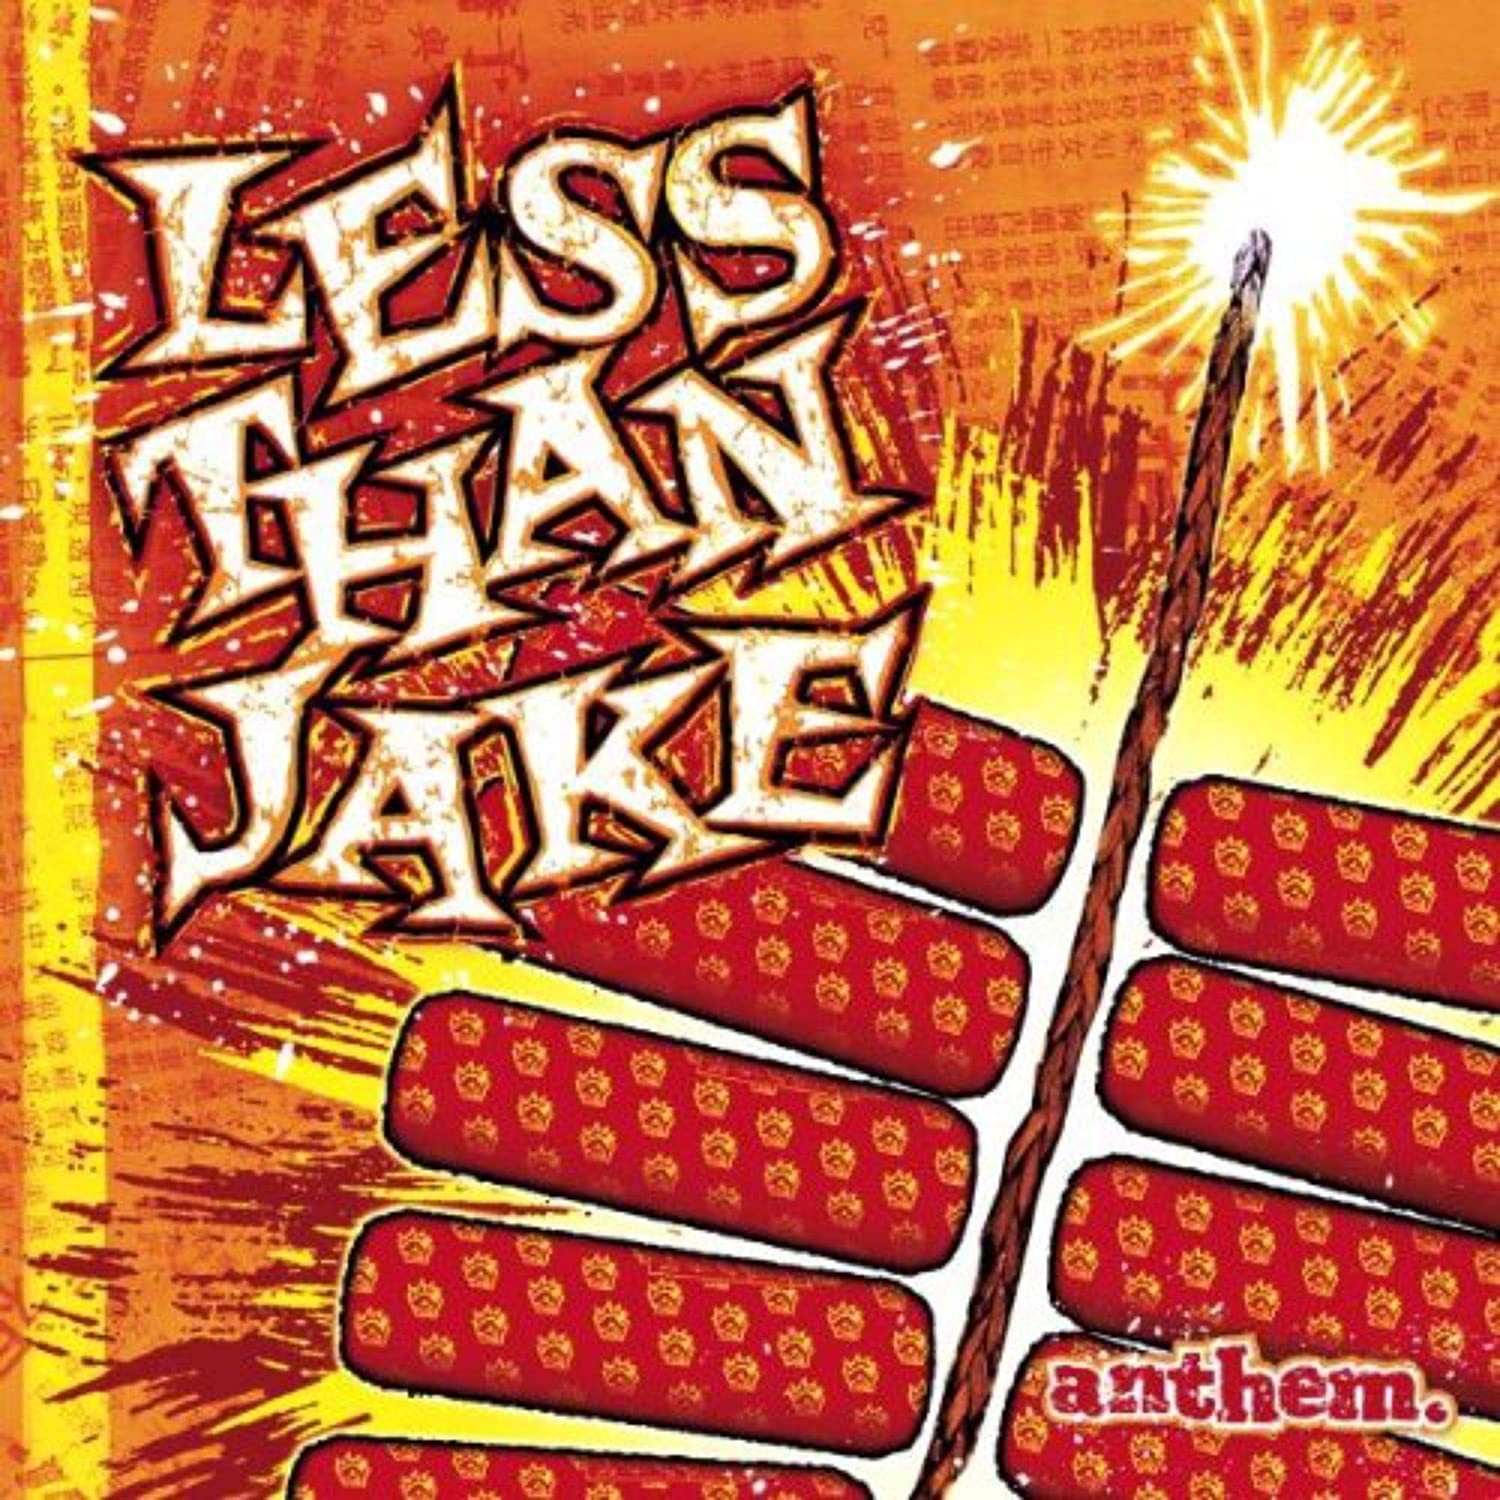 Less Than Jake - Anthem (Orange) Vinyl LP